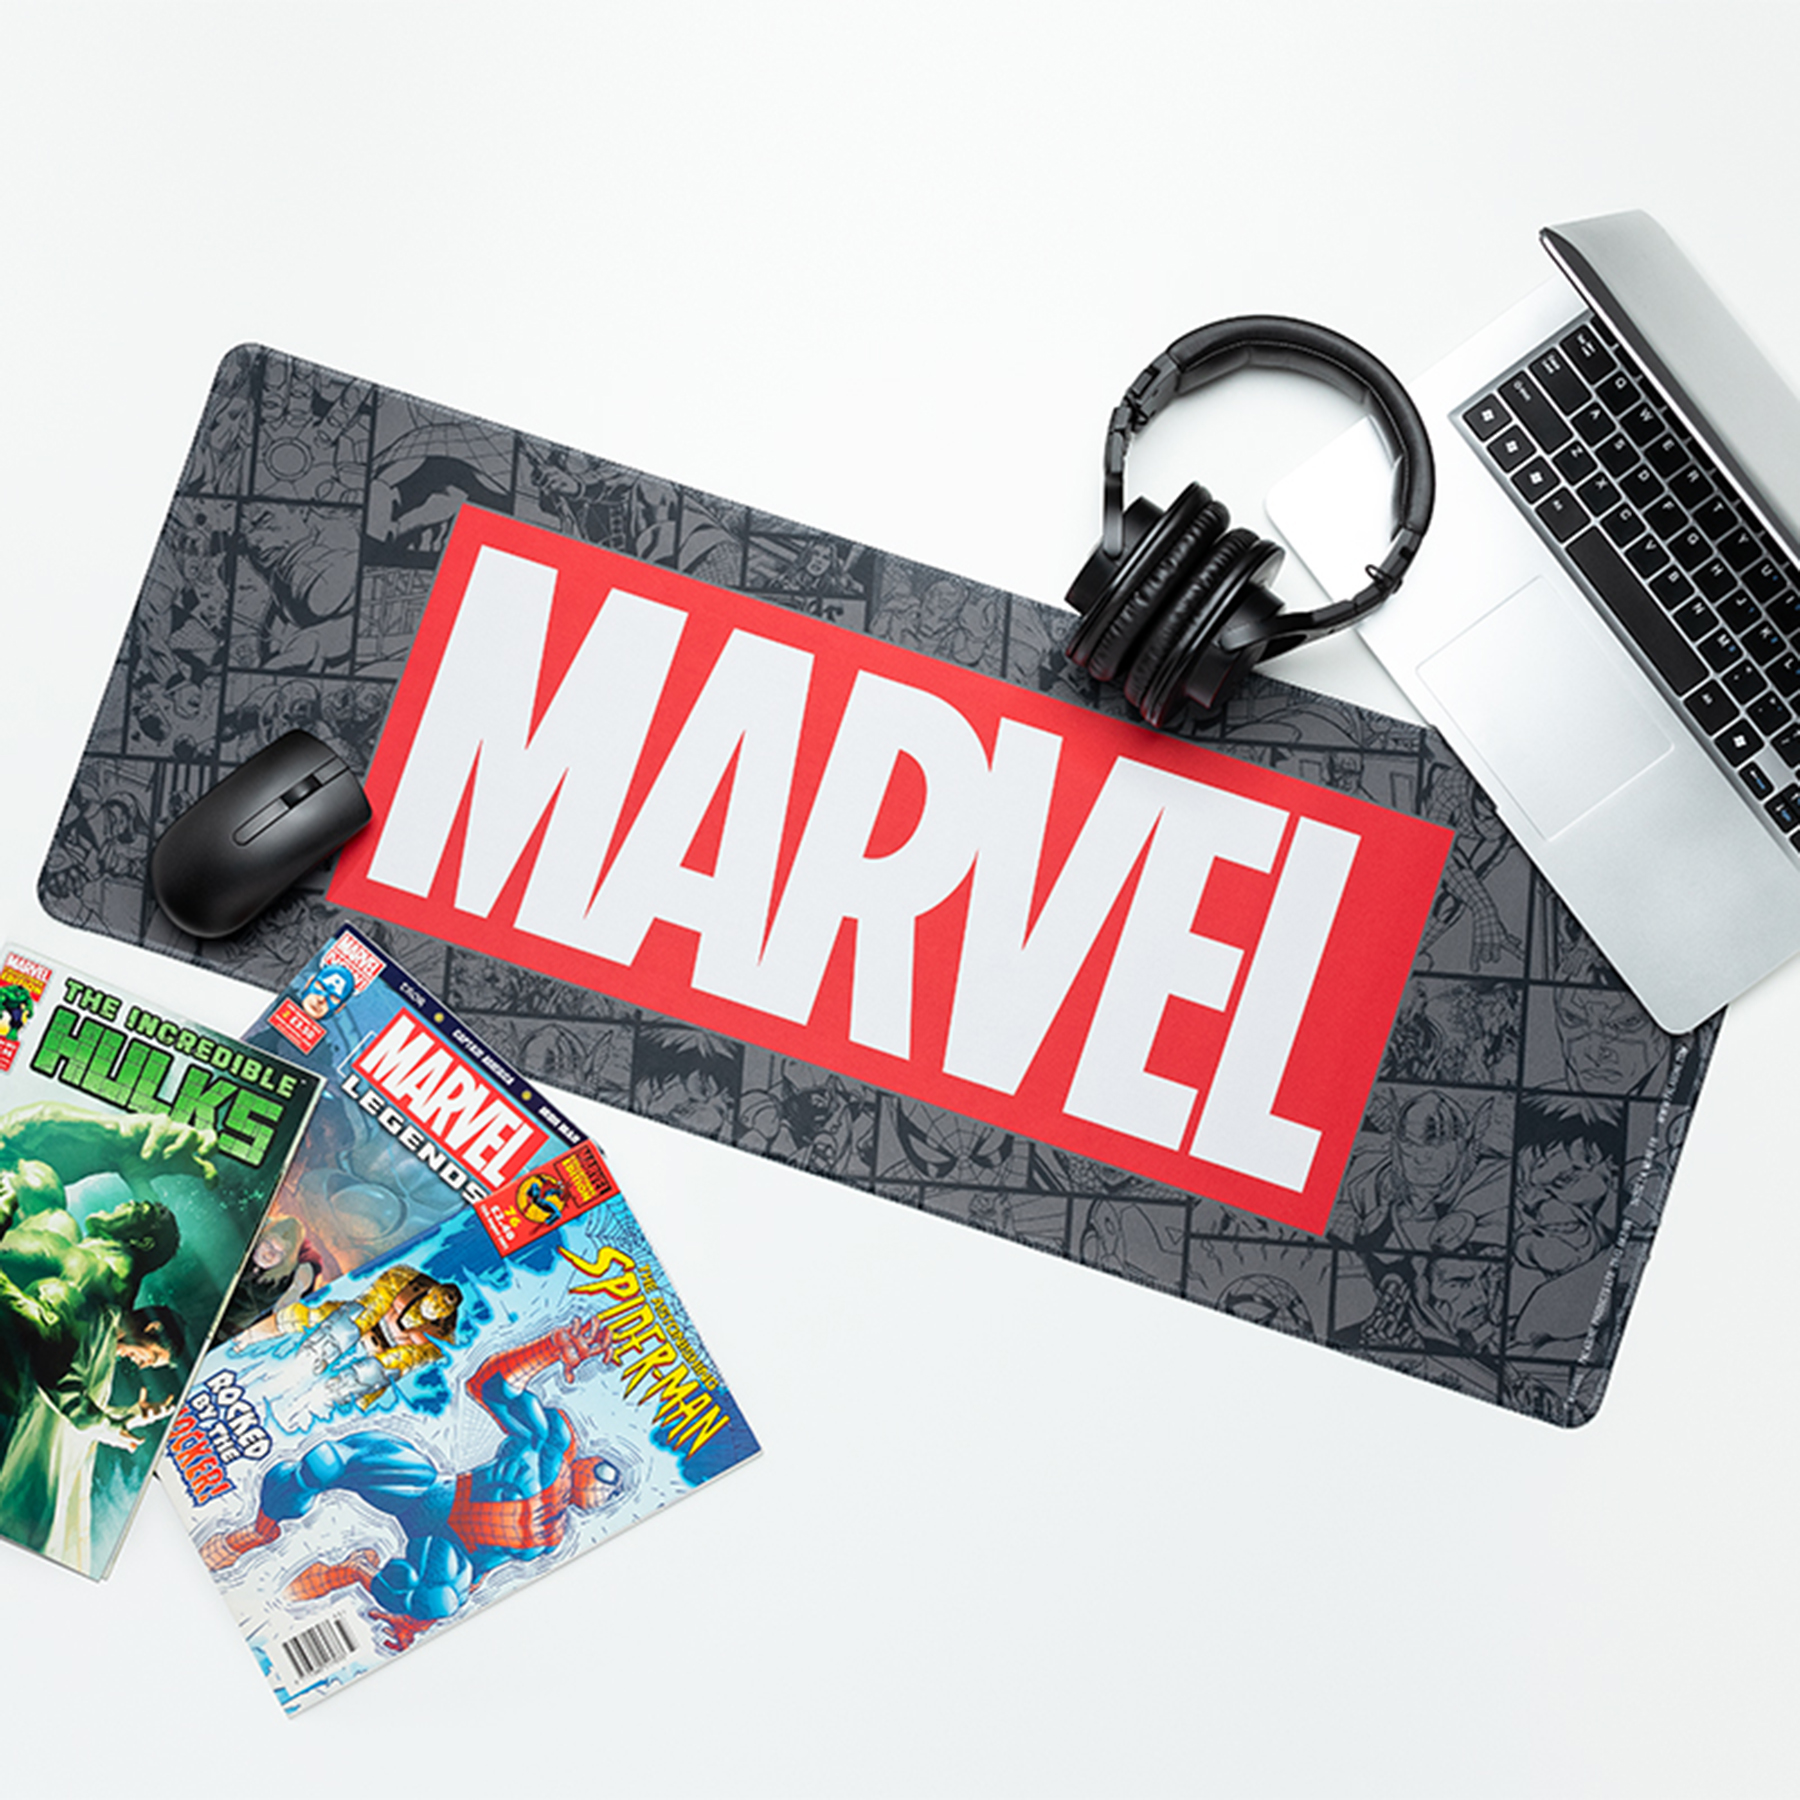 Tapis de jeu XL Marvel - Deadpool Tapis pour clavier et souris